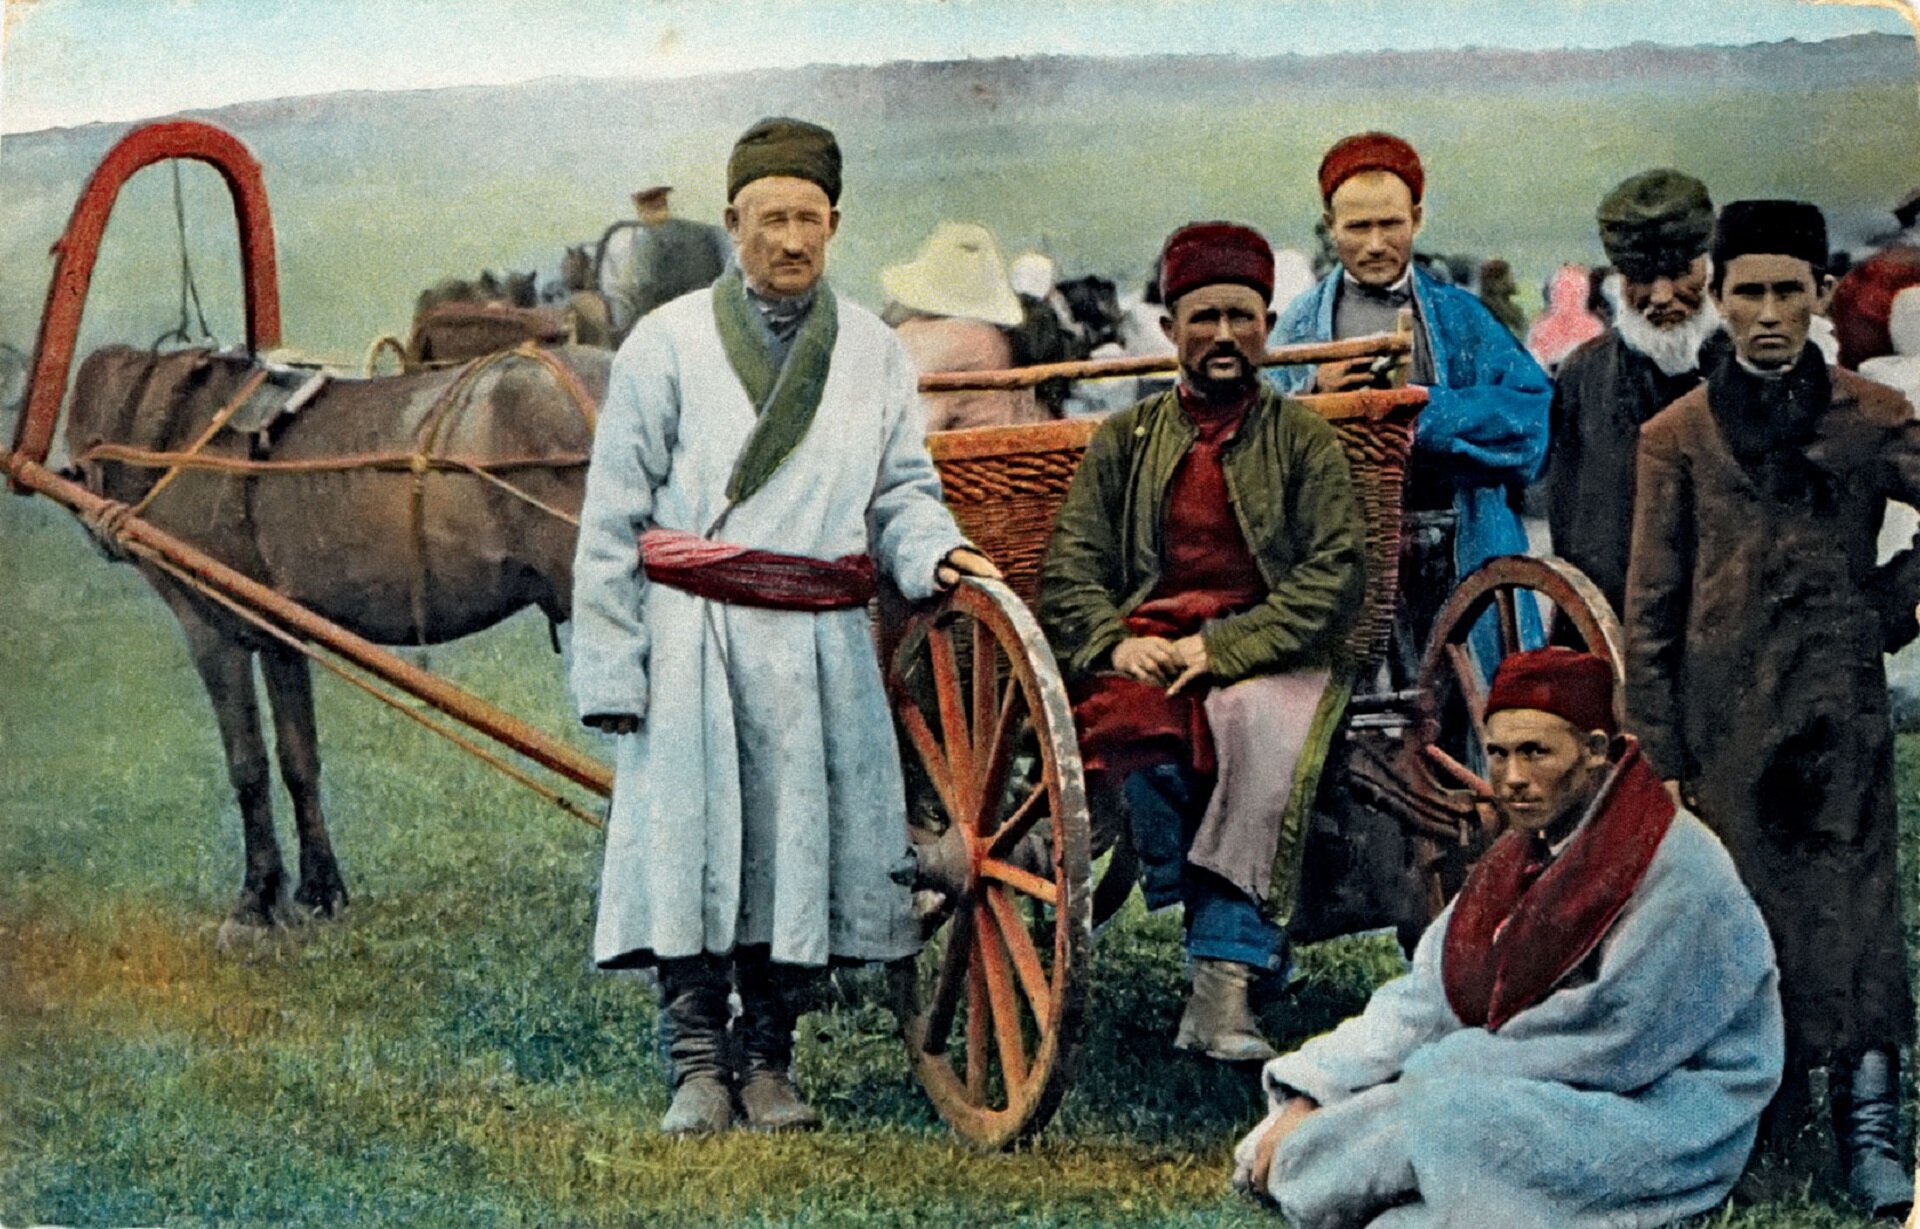 Ilustracja przedstawia Tatarów z Kresów Wschodnich. Pięciu mężczyzn stoi przy wozie, jeden z nich siedzi na wozie. Wszyscy ubrani są w tradycyjne stroje ludowe. Mają długie, grube kaftany, które są przepasane w pasie grubymi paskami. Na głowach mają czapki z baraniego futra.